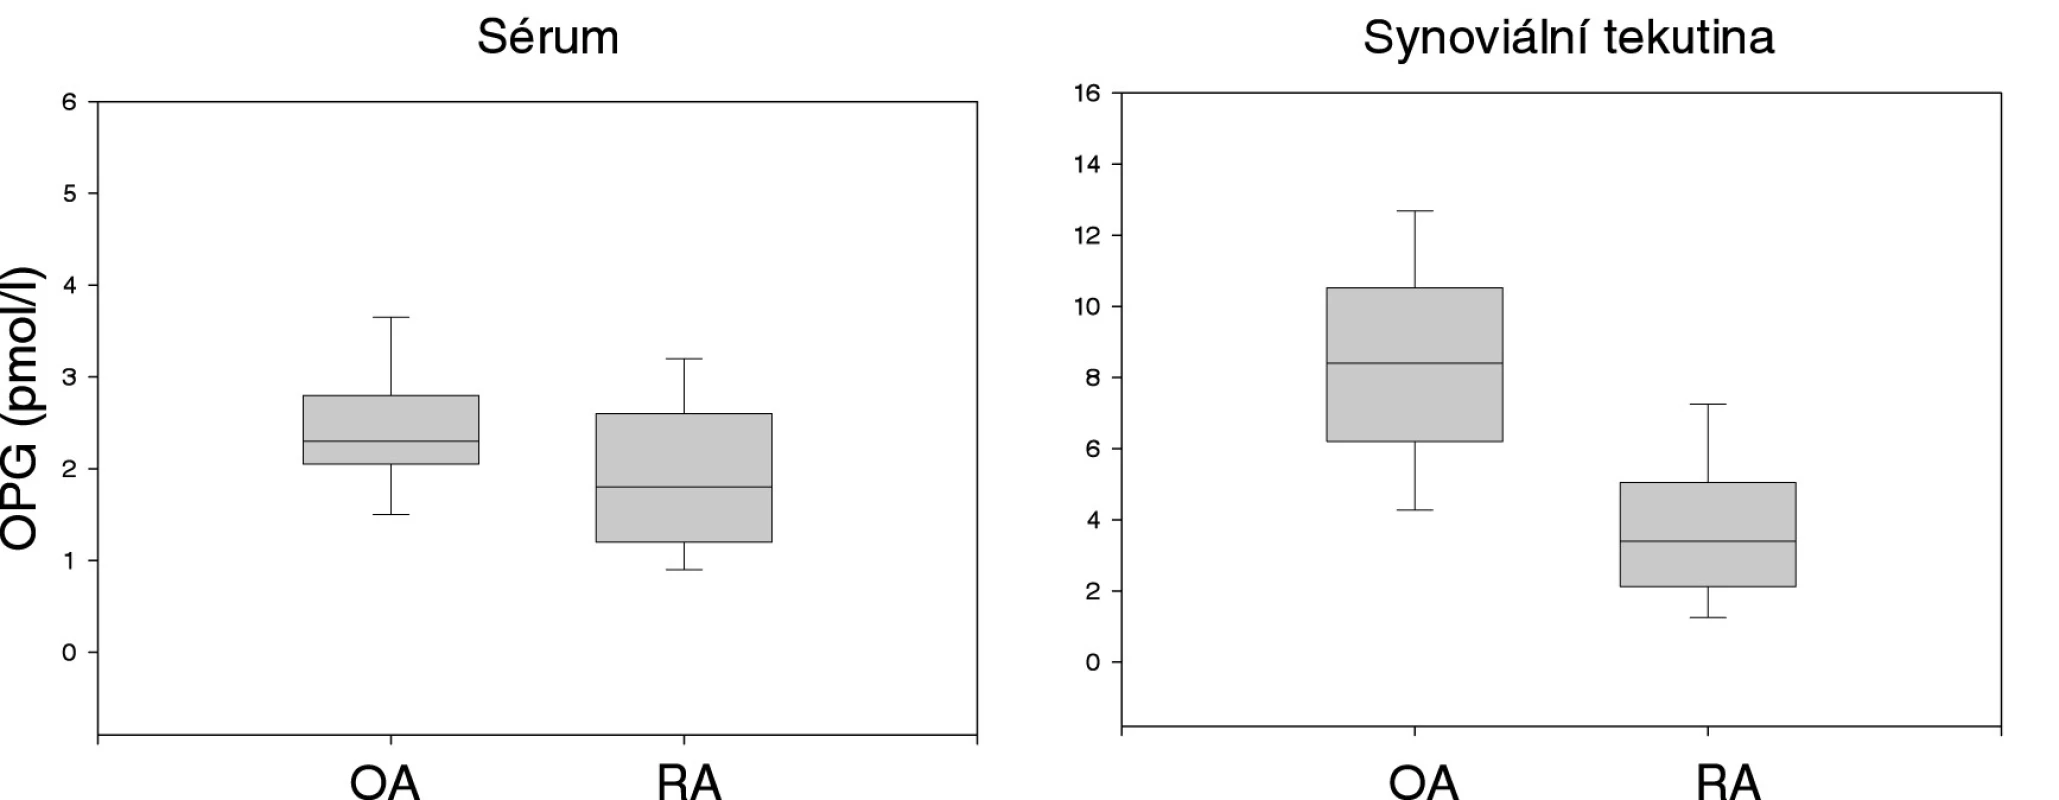 Porovnání koncentrace OPG v séru a synoviální tekutině u pacientů s osteoartrózou (OA) a revmatoidní artritidou (RA).